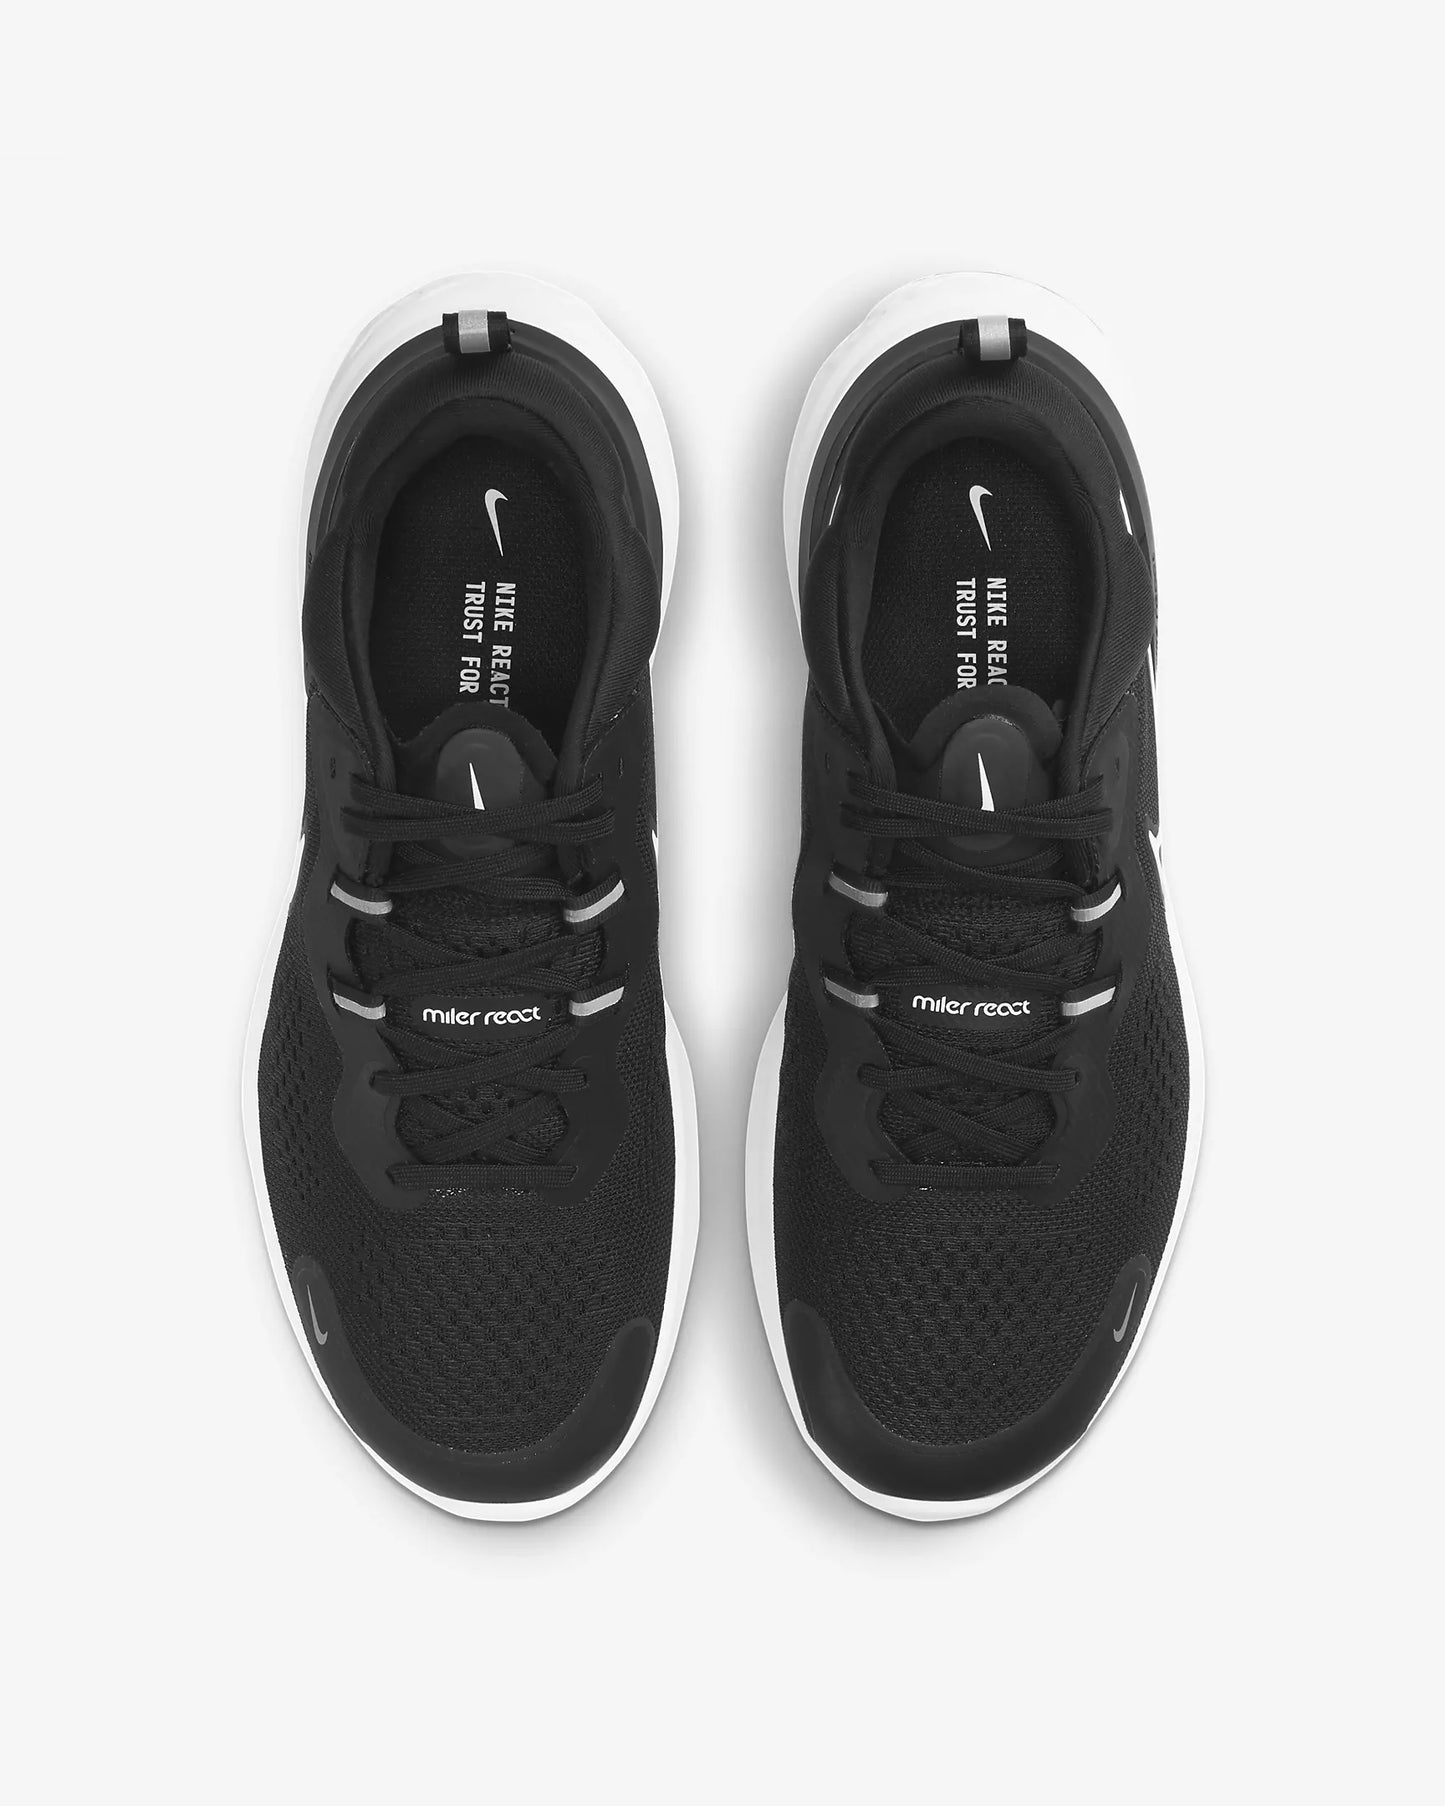 Men's Nike React Miller 2 Road Running Shoes, CW7121 001 Multi Sizes Black/Smoke Grey/White